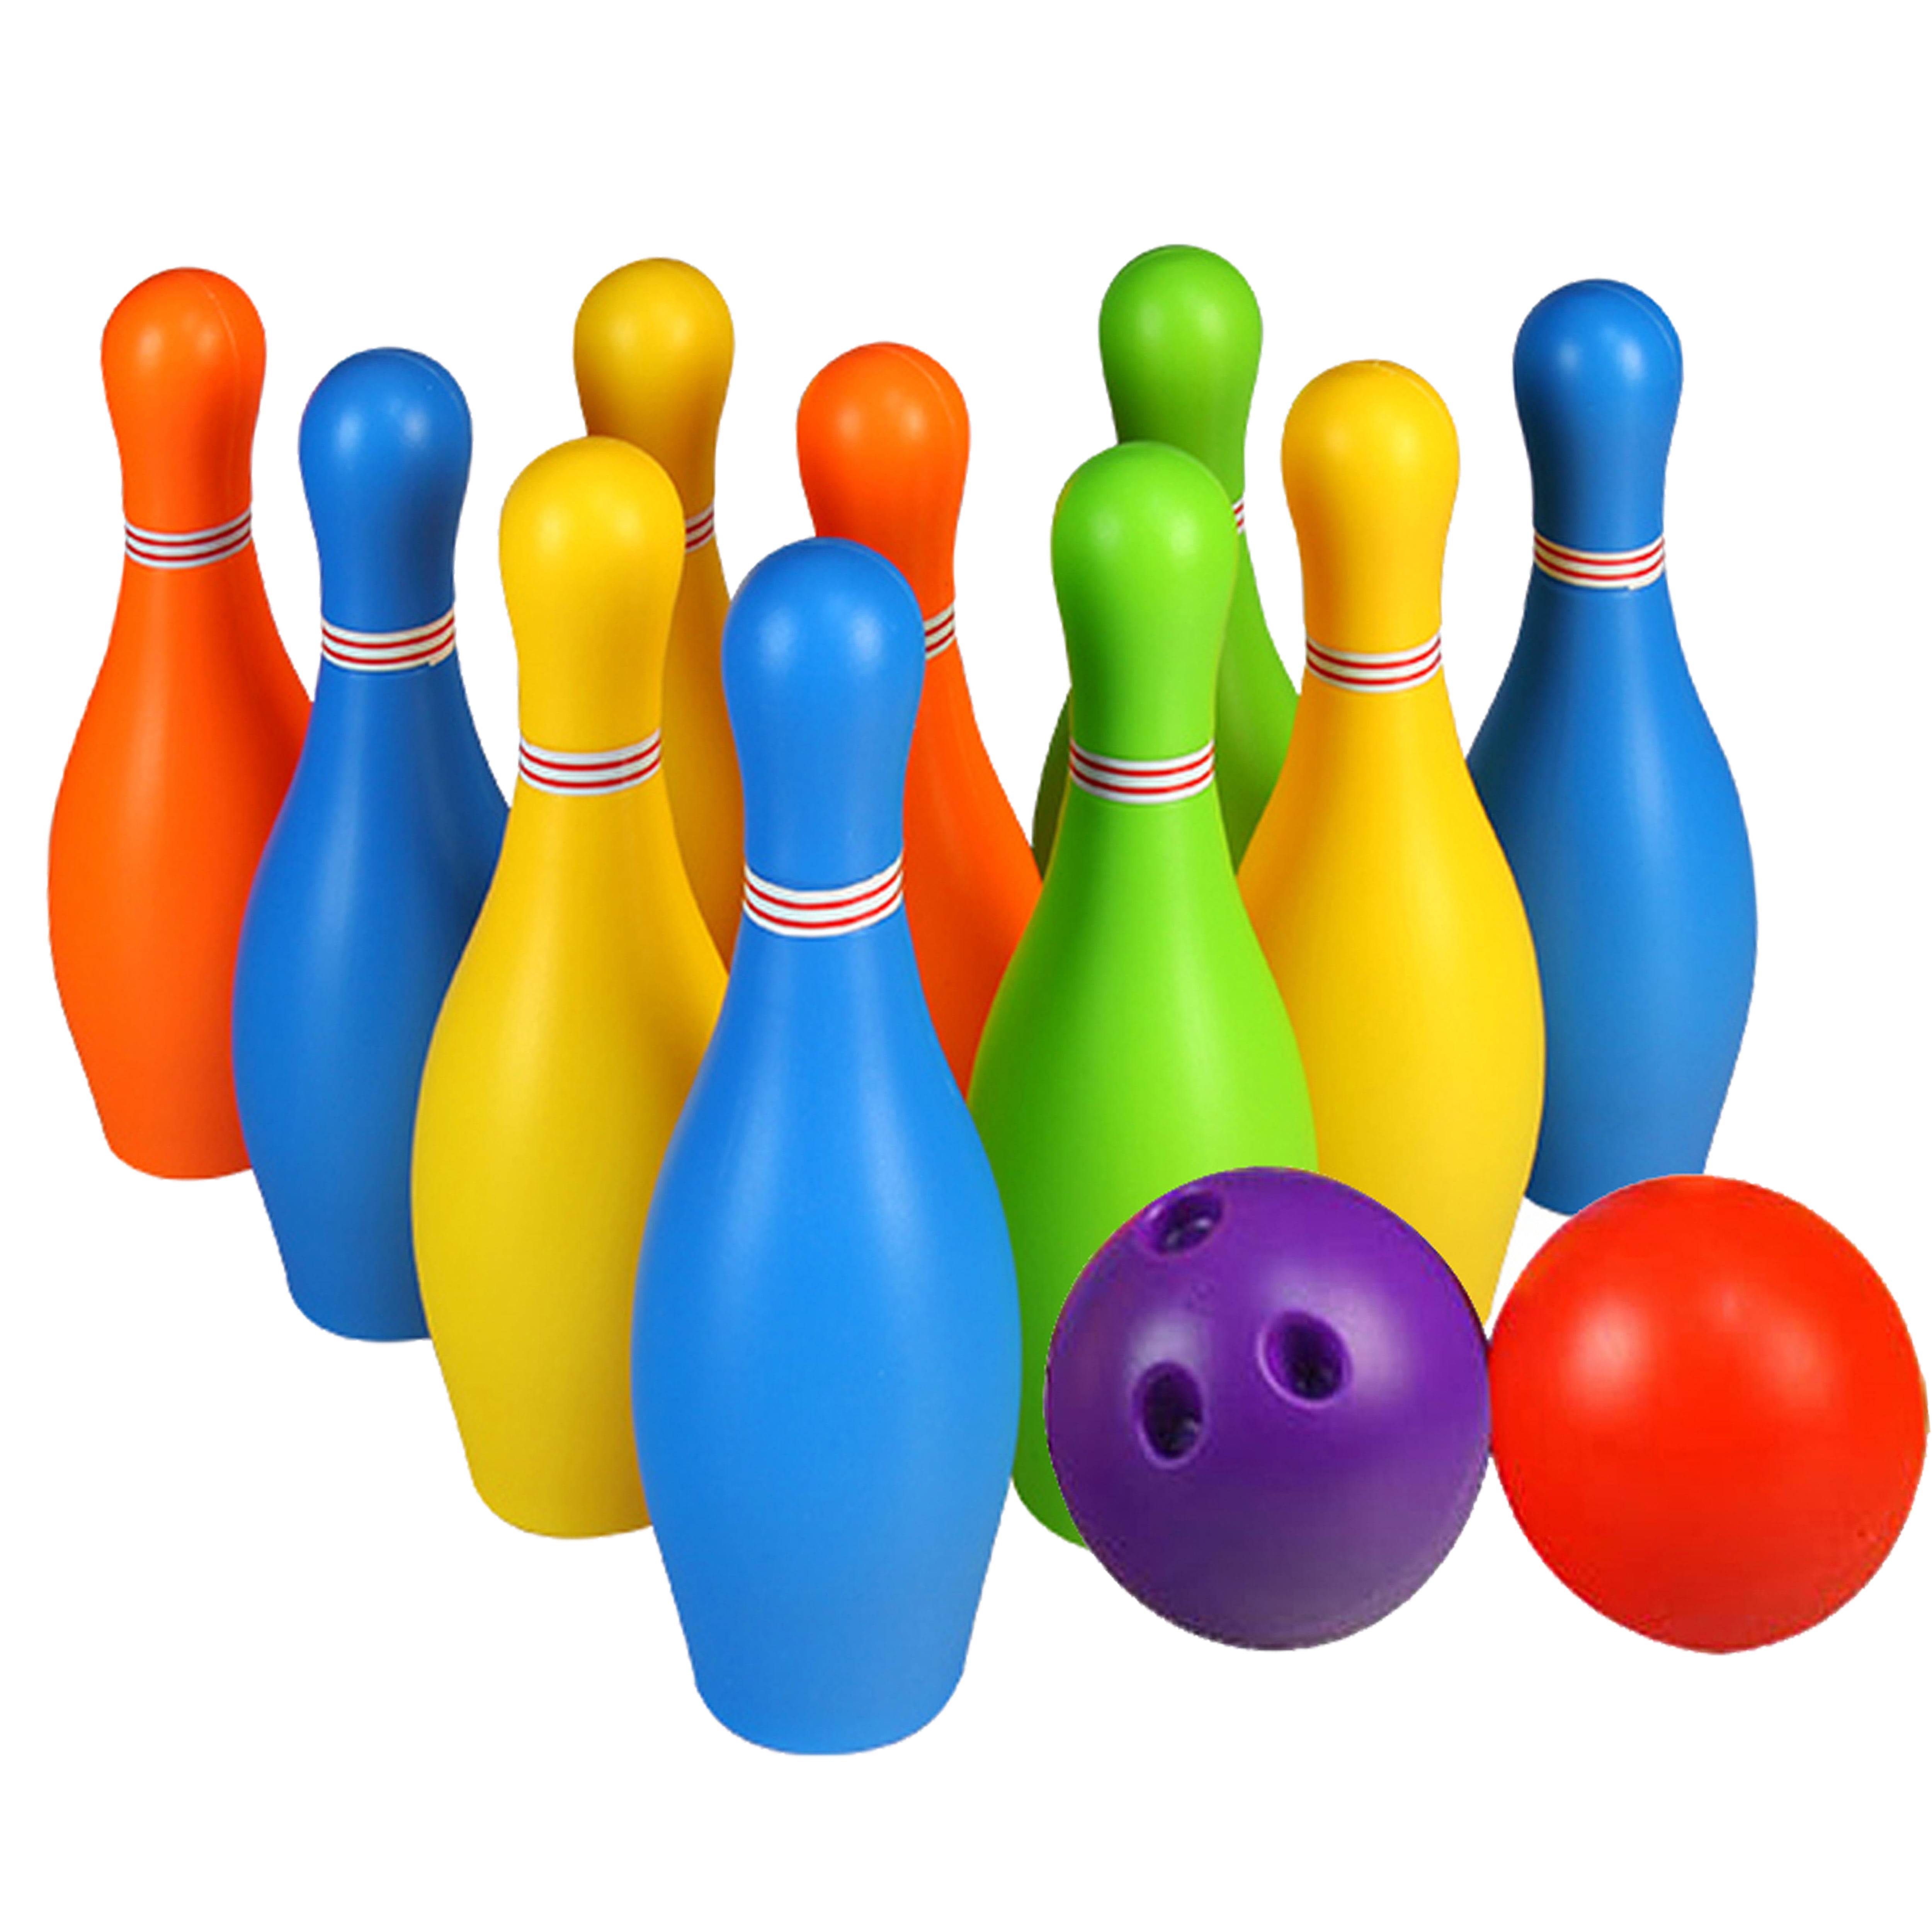 Kids Plastic Bowling Set Play Game Cartoon Face Skittles Pin & Ball Set Gift Fun 